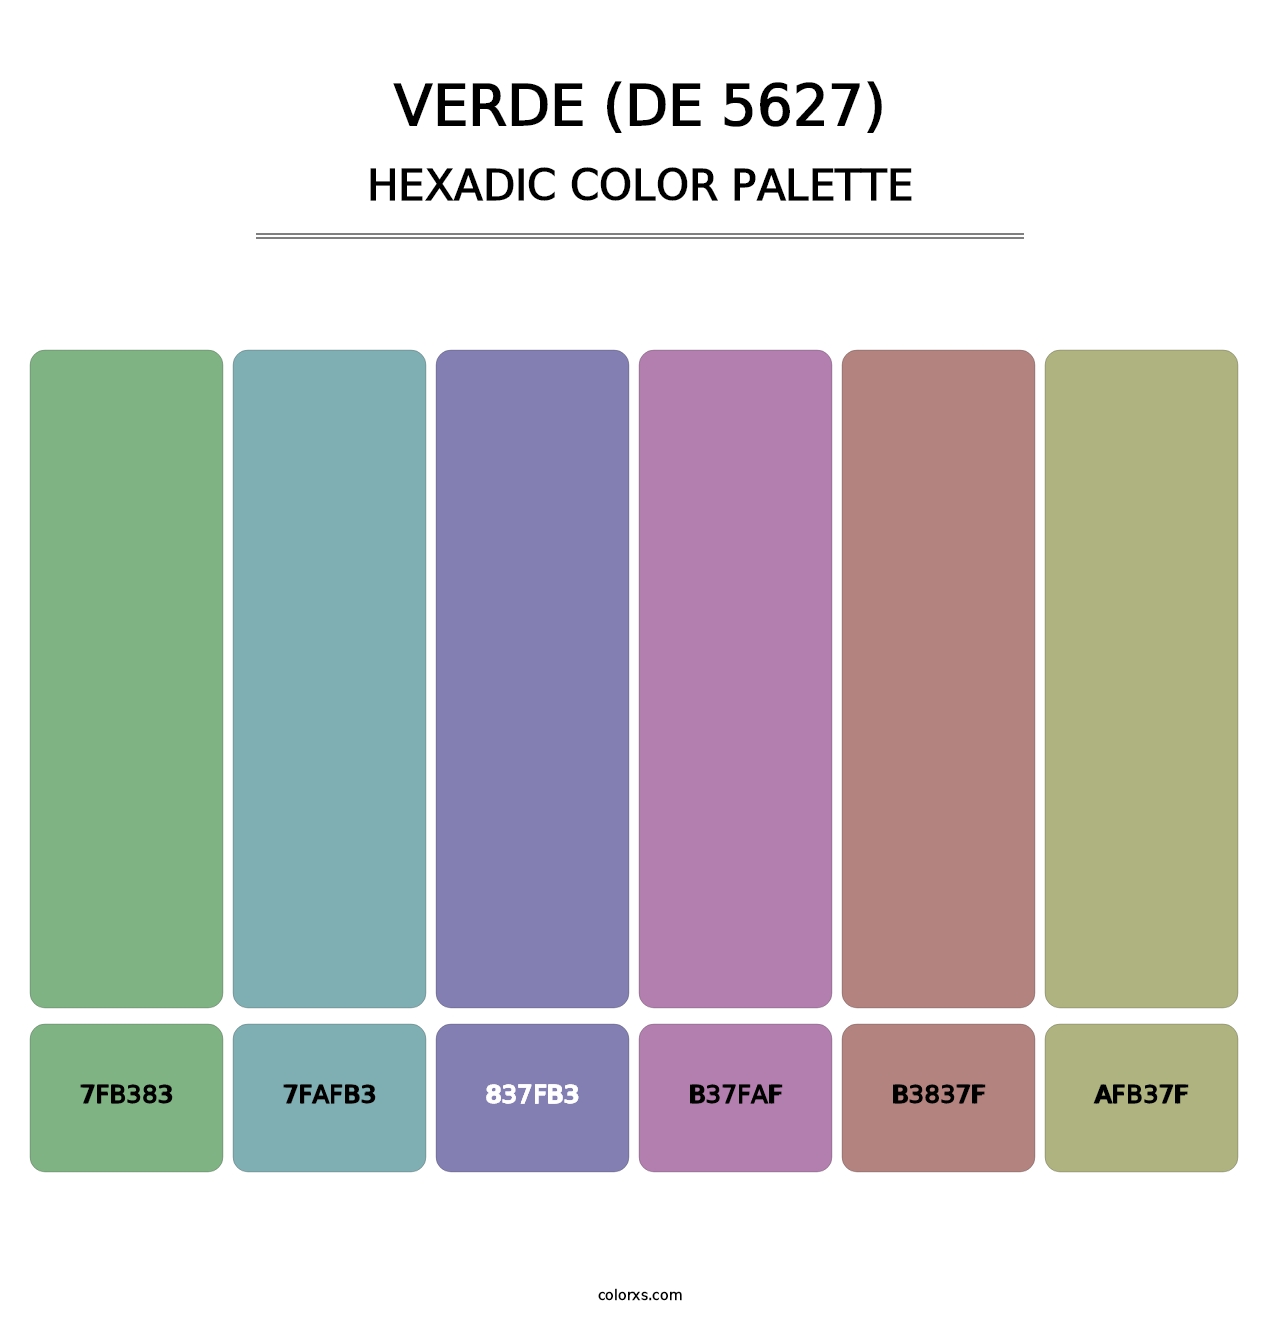 Verde (DE 5627) - Hexadic Color Palette